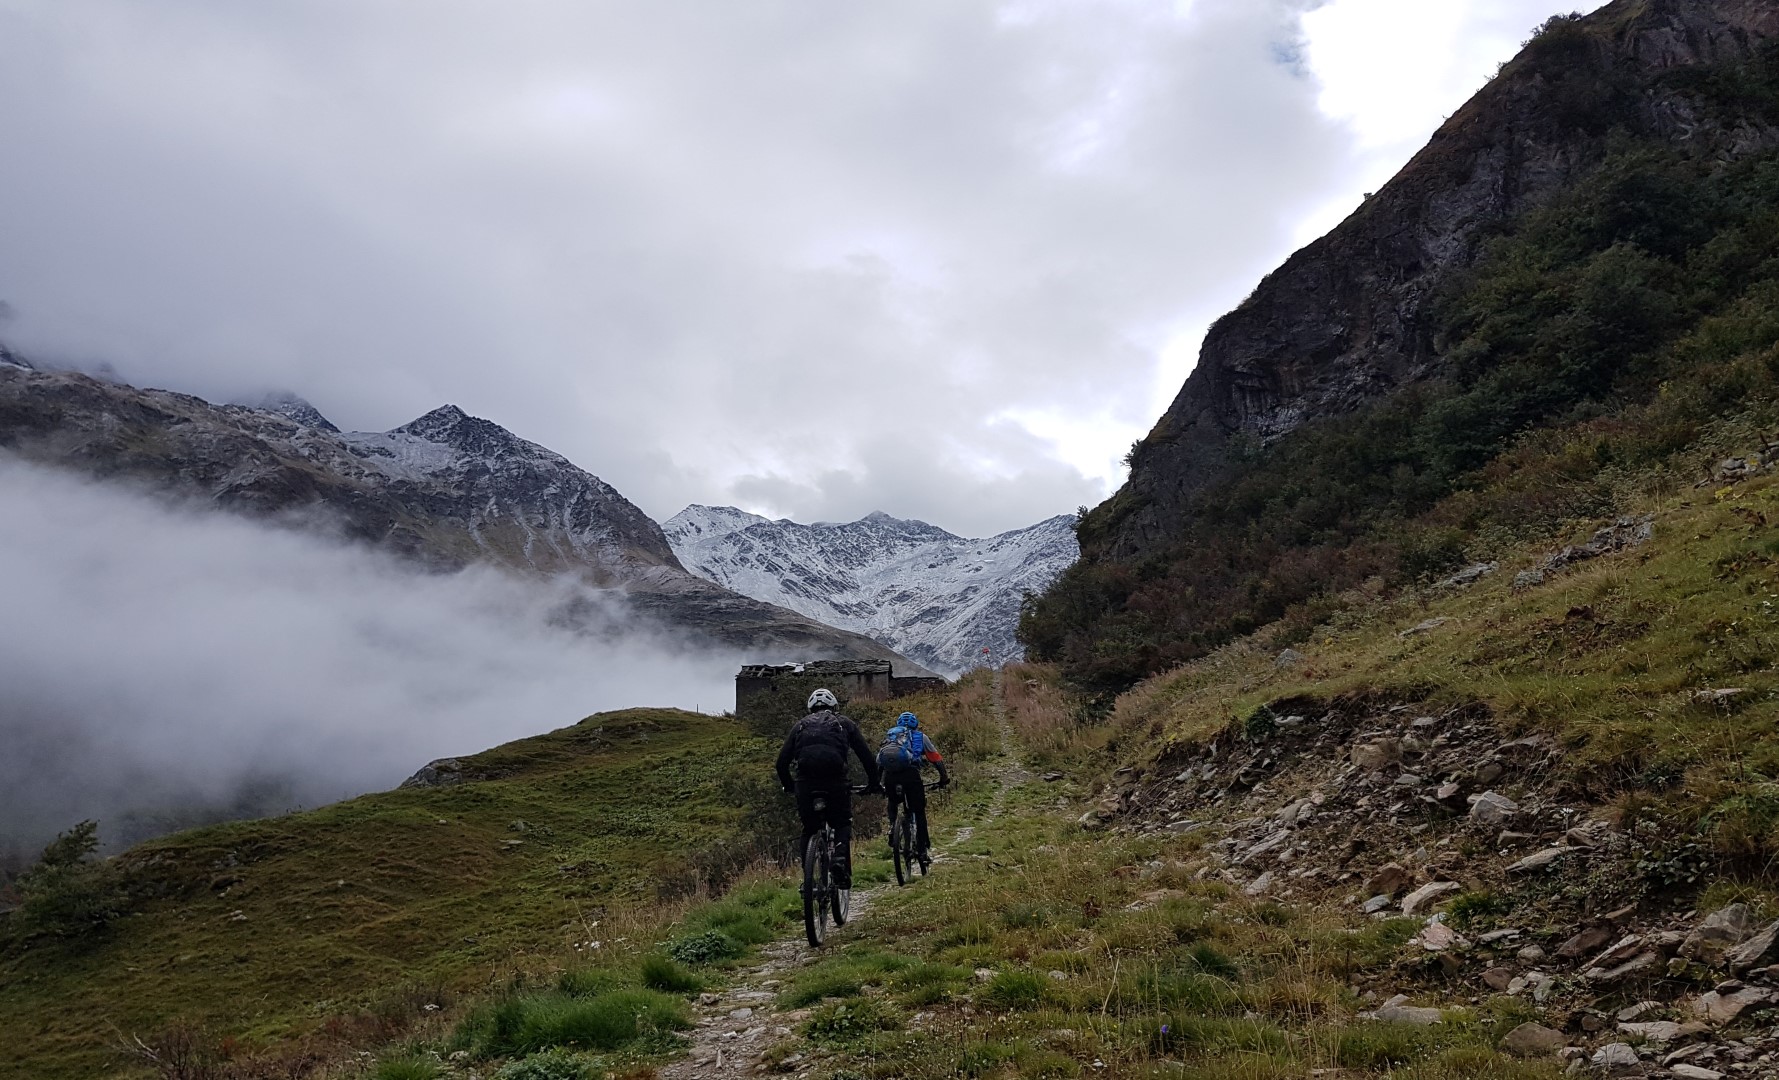 אנדורו בייקפאקינג- חופשת אופניים "אחרת" בצפון איטליה ושוויץ